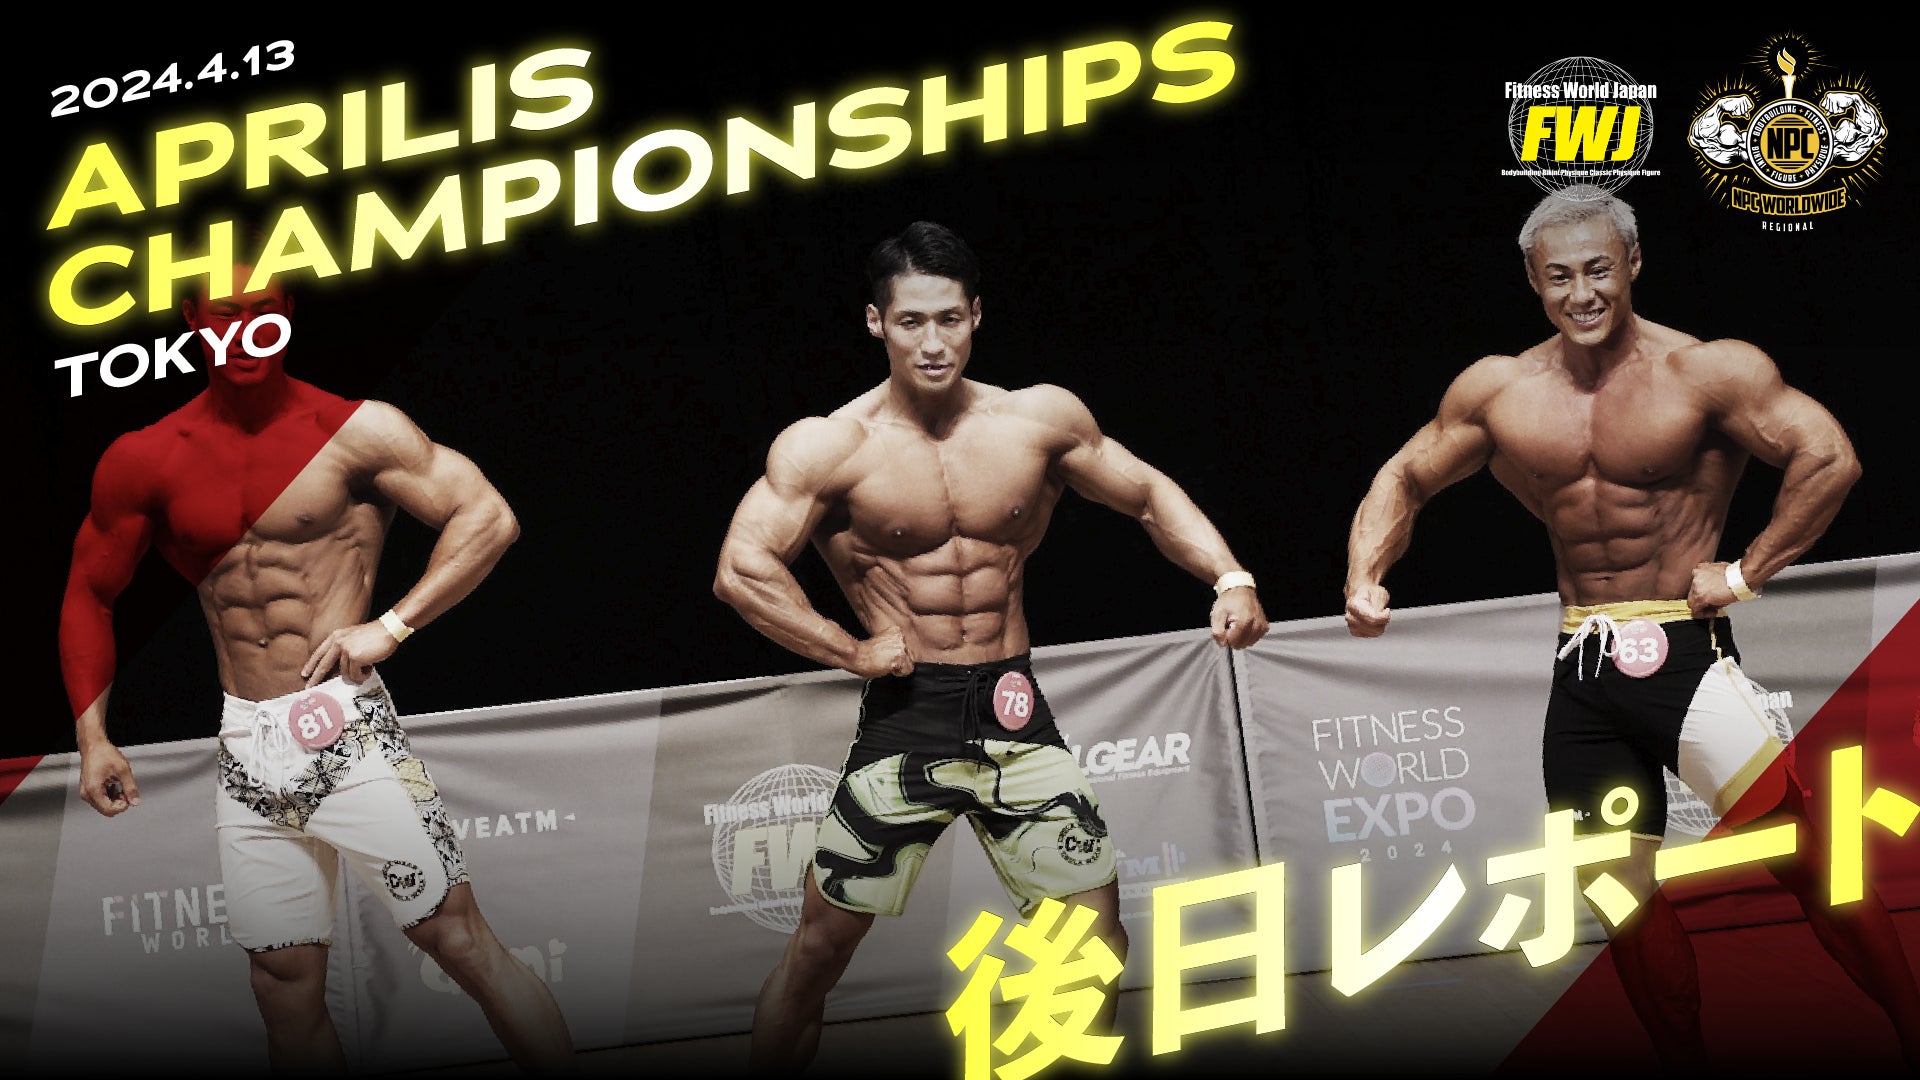 【フィットネス・ボディビル団体 FWJ】第二戦「APRILIS CHAMPIONSHIPS 2024 」開催レポート!